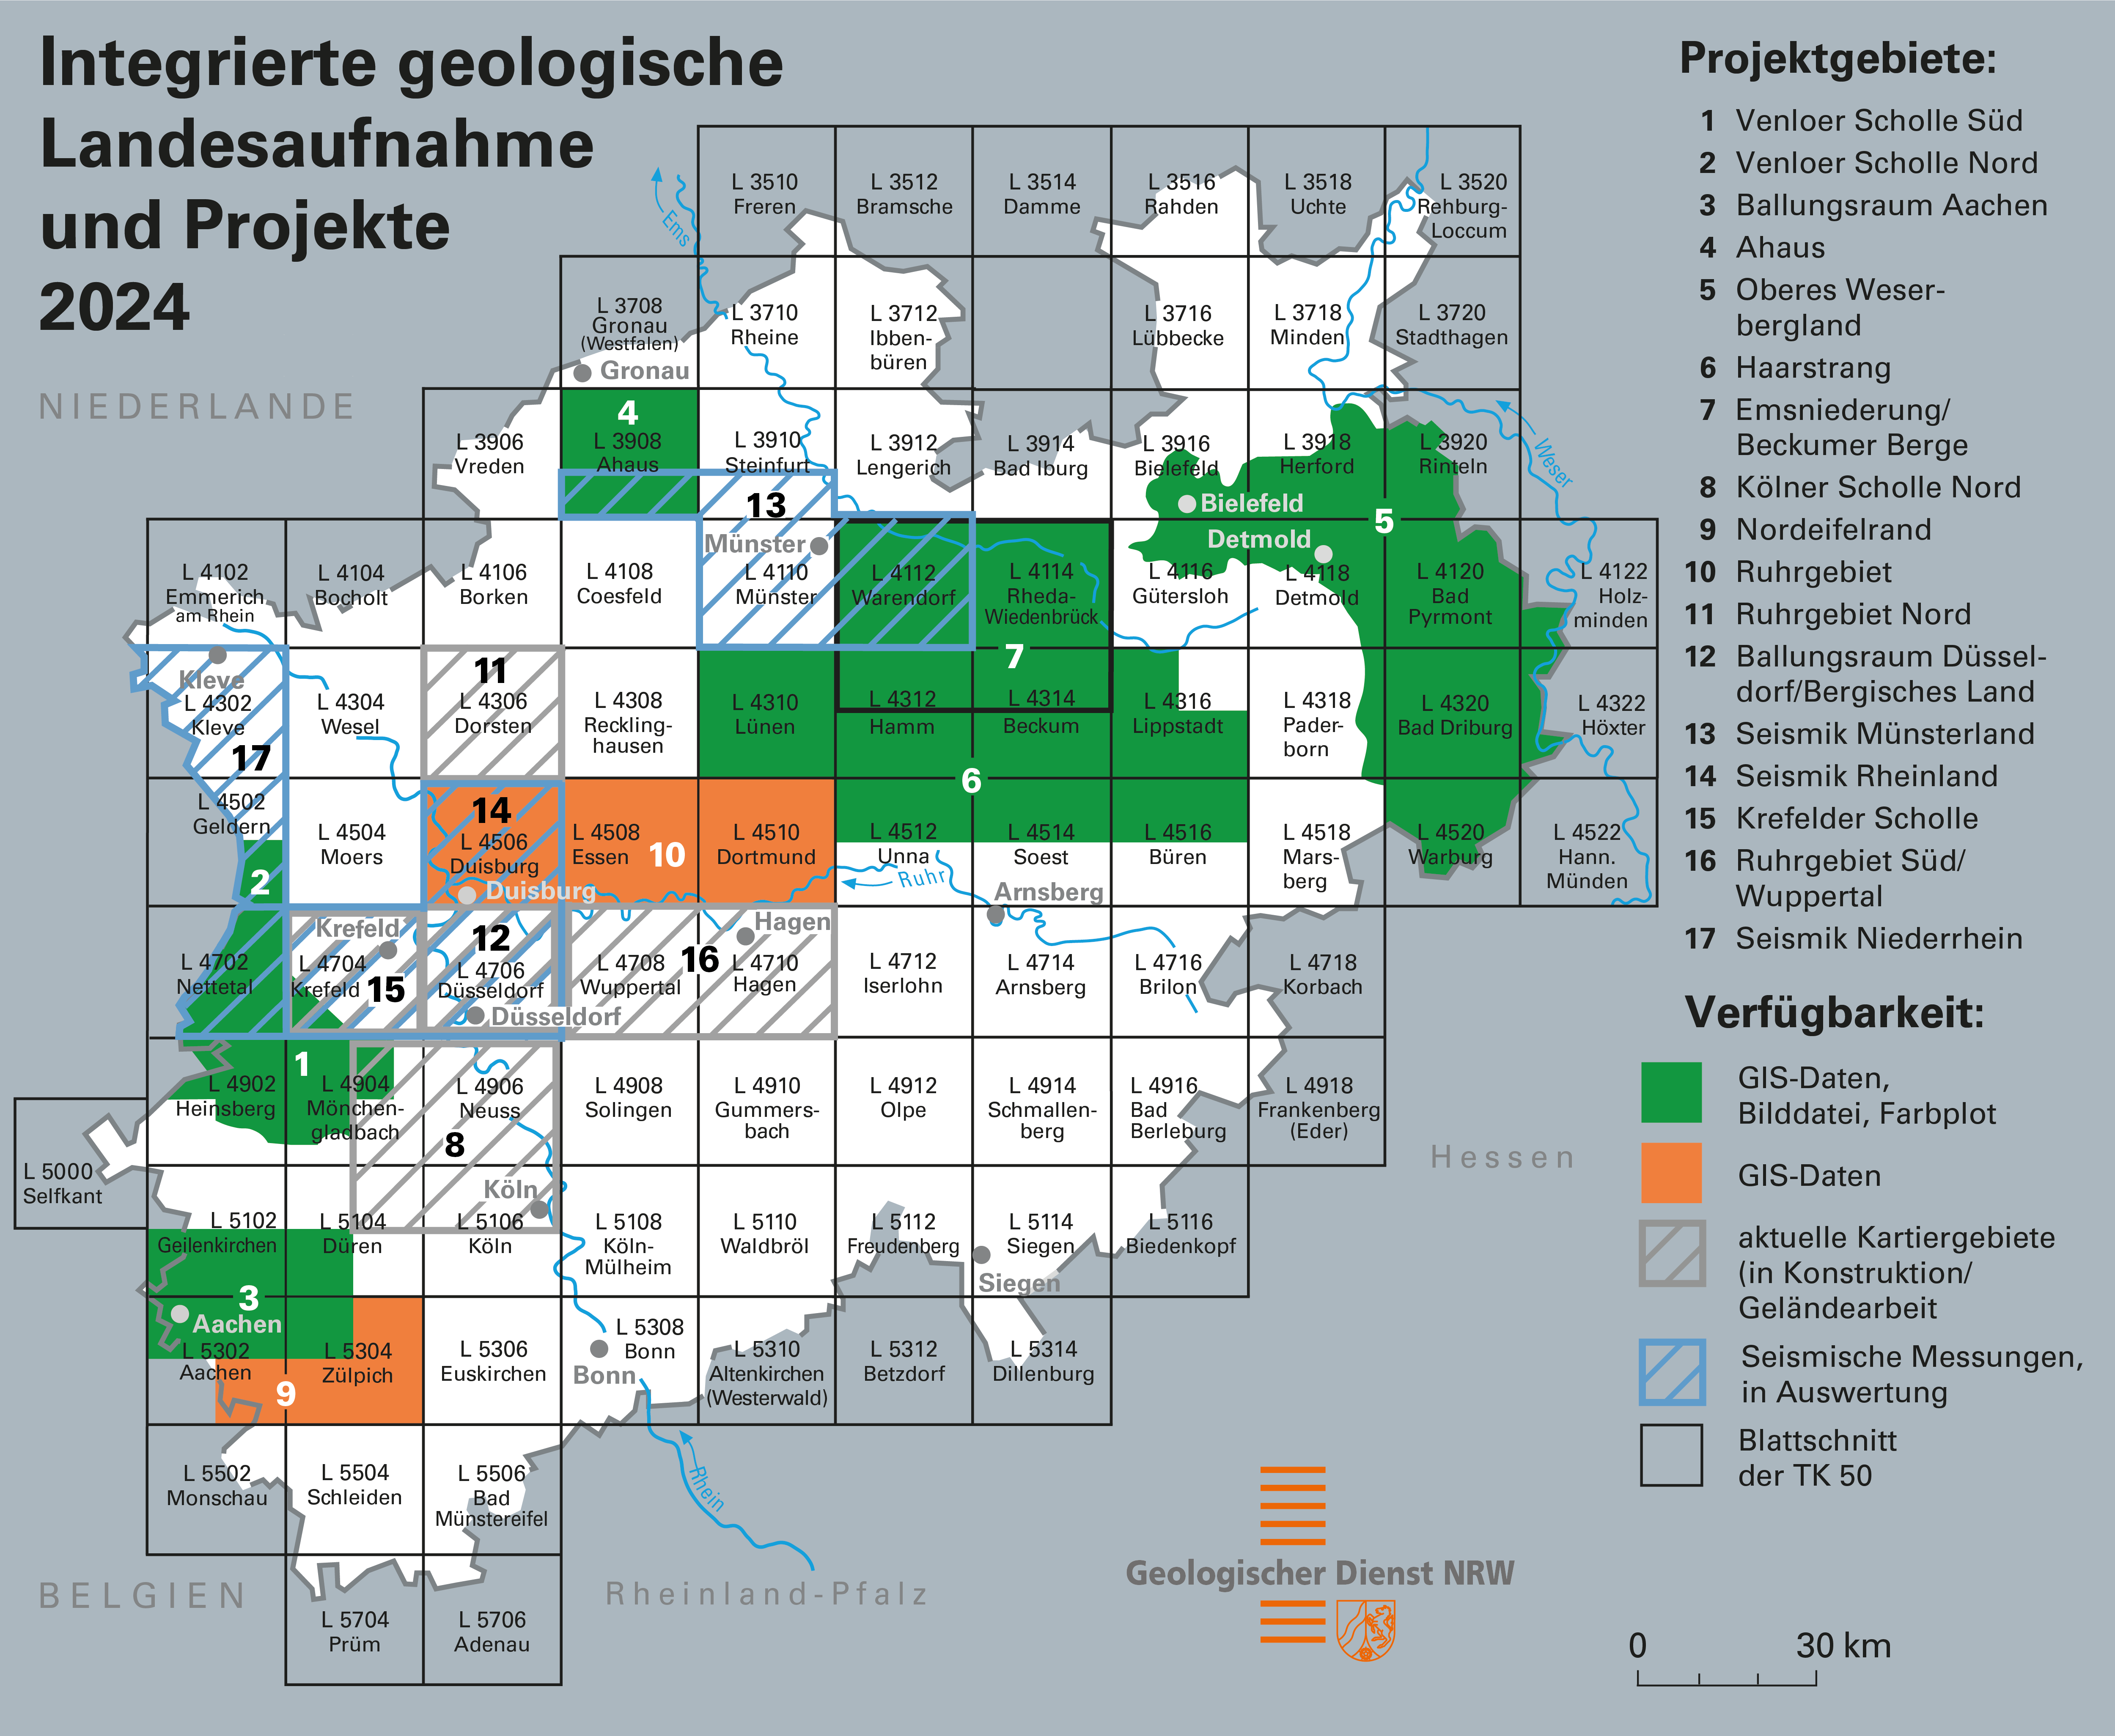 Aktuelle Projektgebiete der integrierten geologischen Landesaufnahme